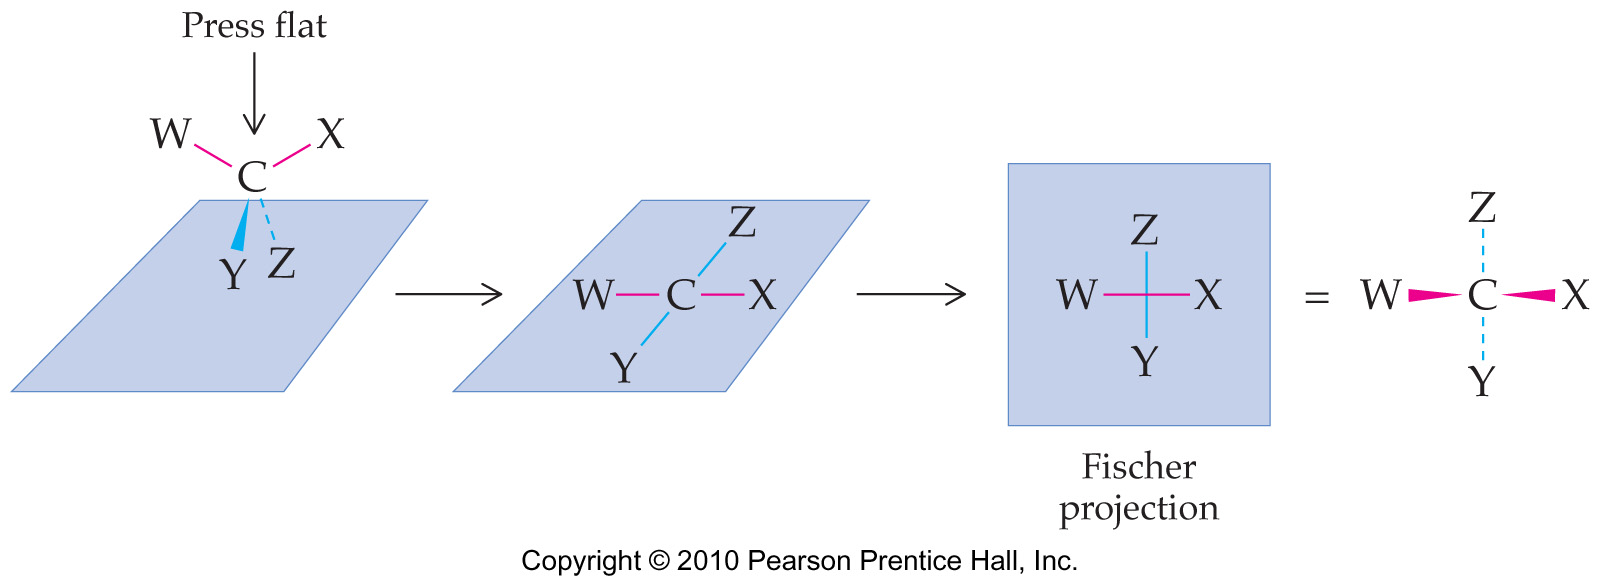 Fischer projektion ett sätt att presentera stereoisomerer två-dimensionellt Regler för att rita 1- Stereocentrum (kirala kolet C) placeras i papprets plan -